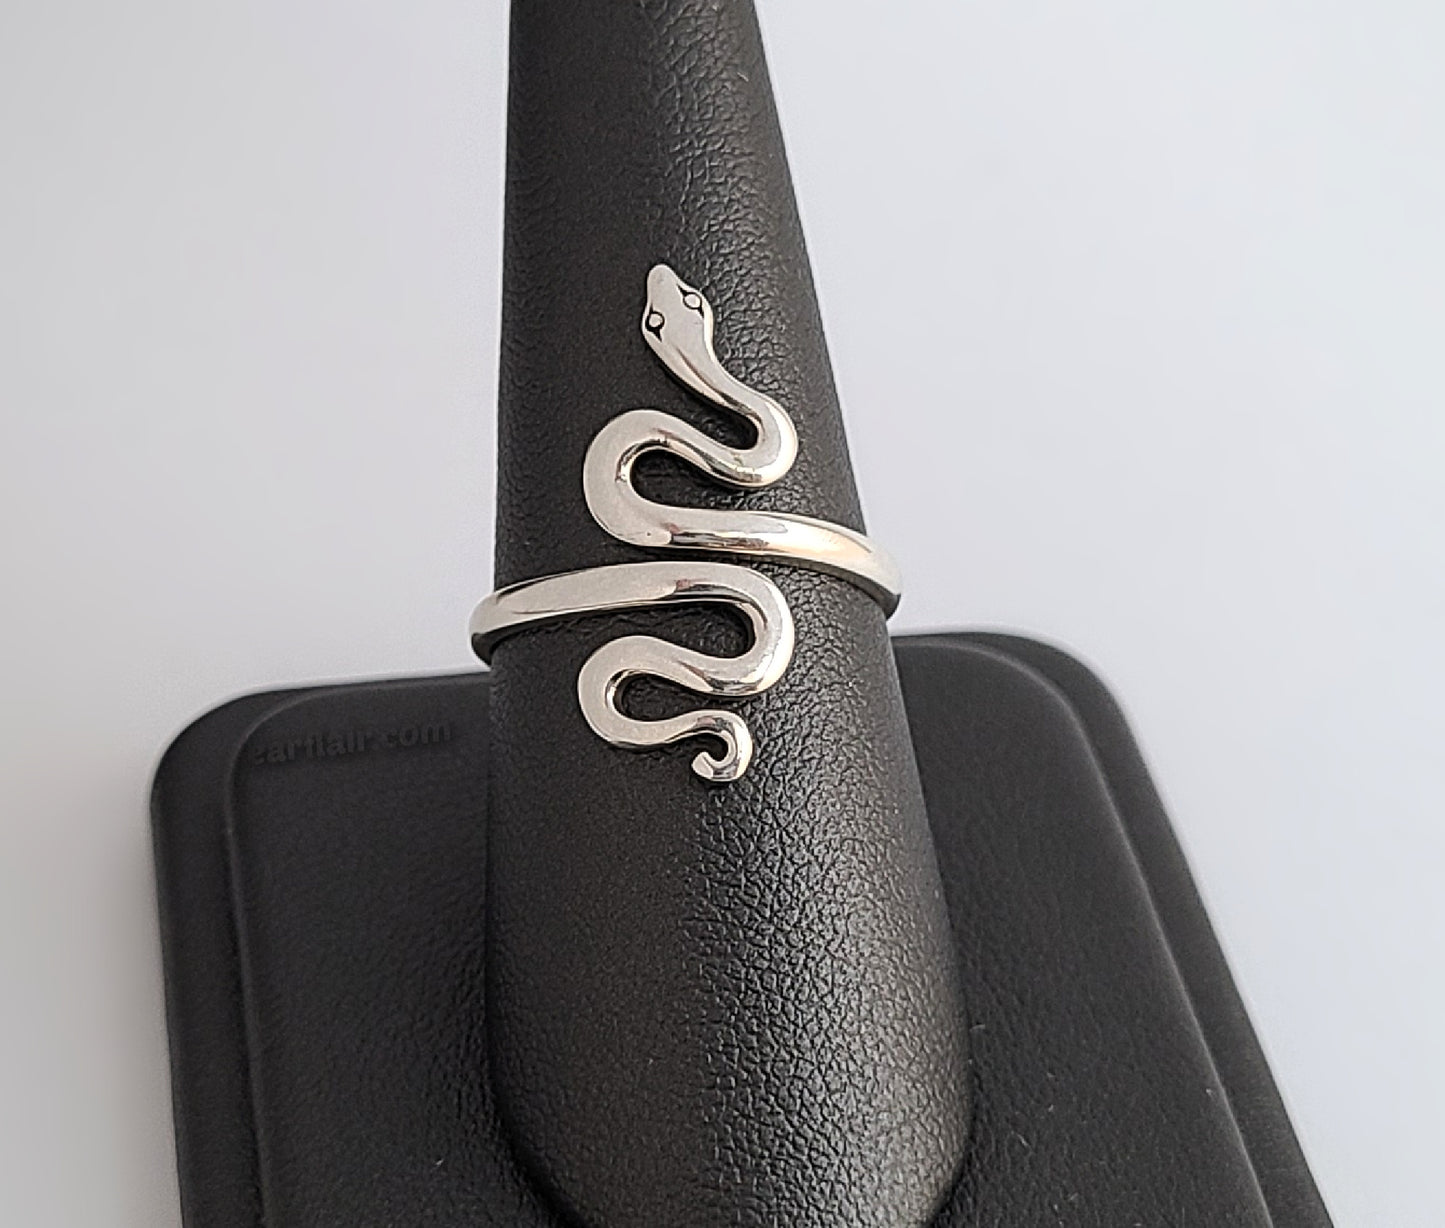 Sterling Silver Adjustable Snake Ring